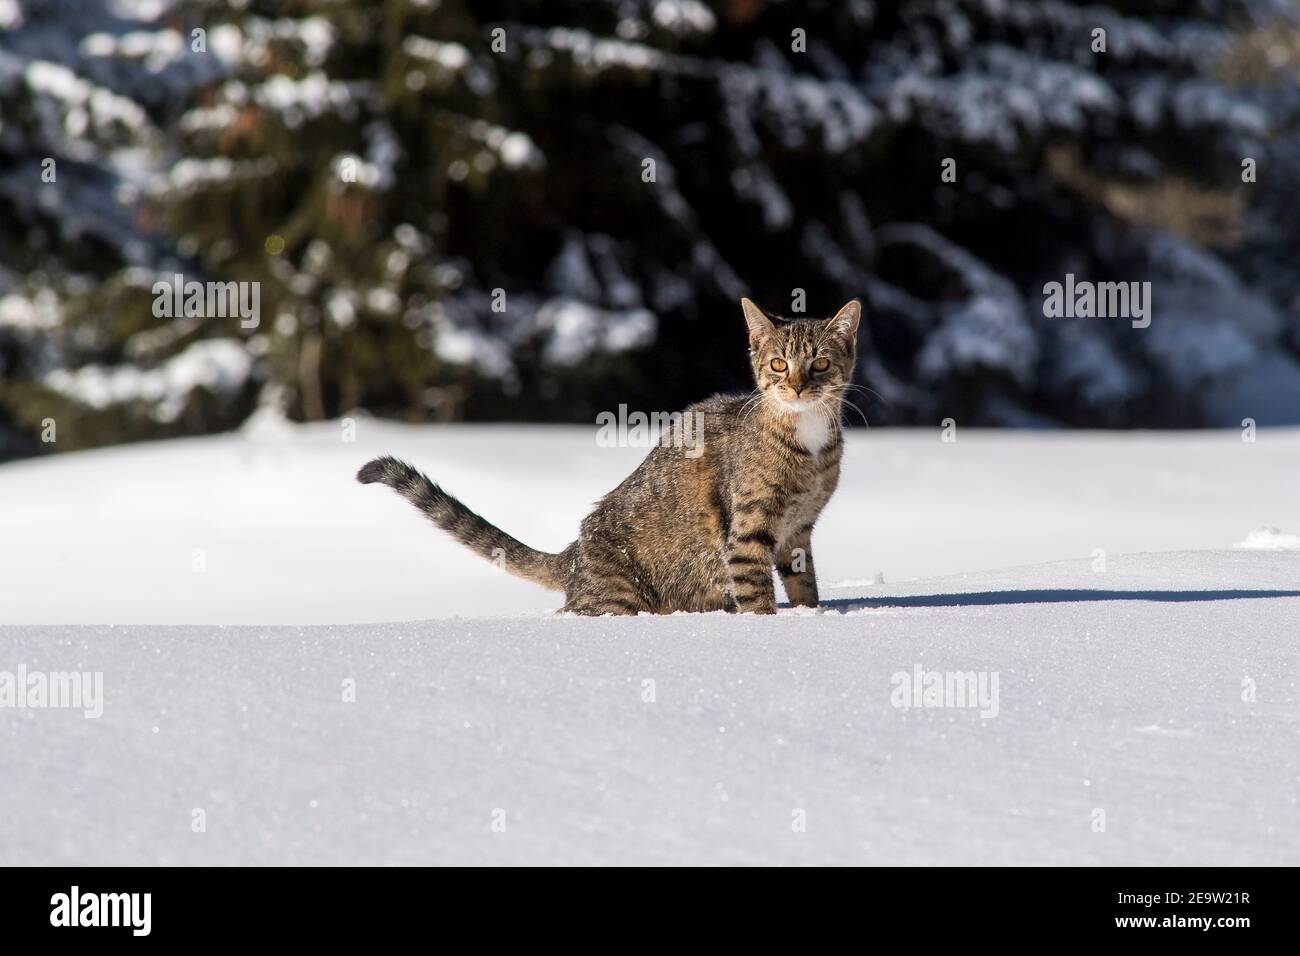 le chat tabby domestique joue dans la neige fraîche en poudre Banque D'Images